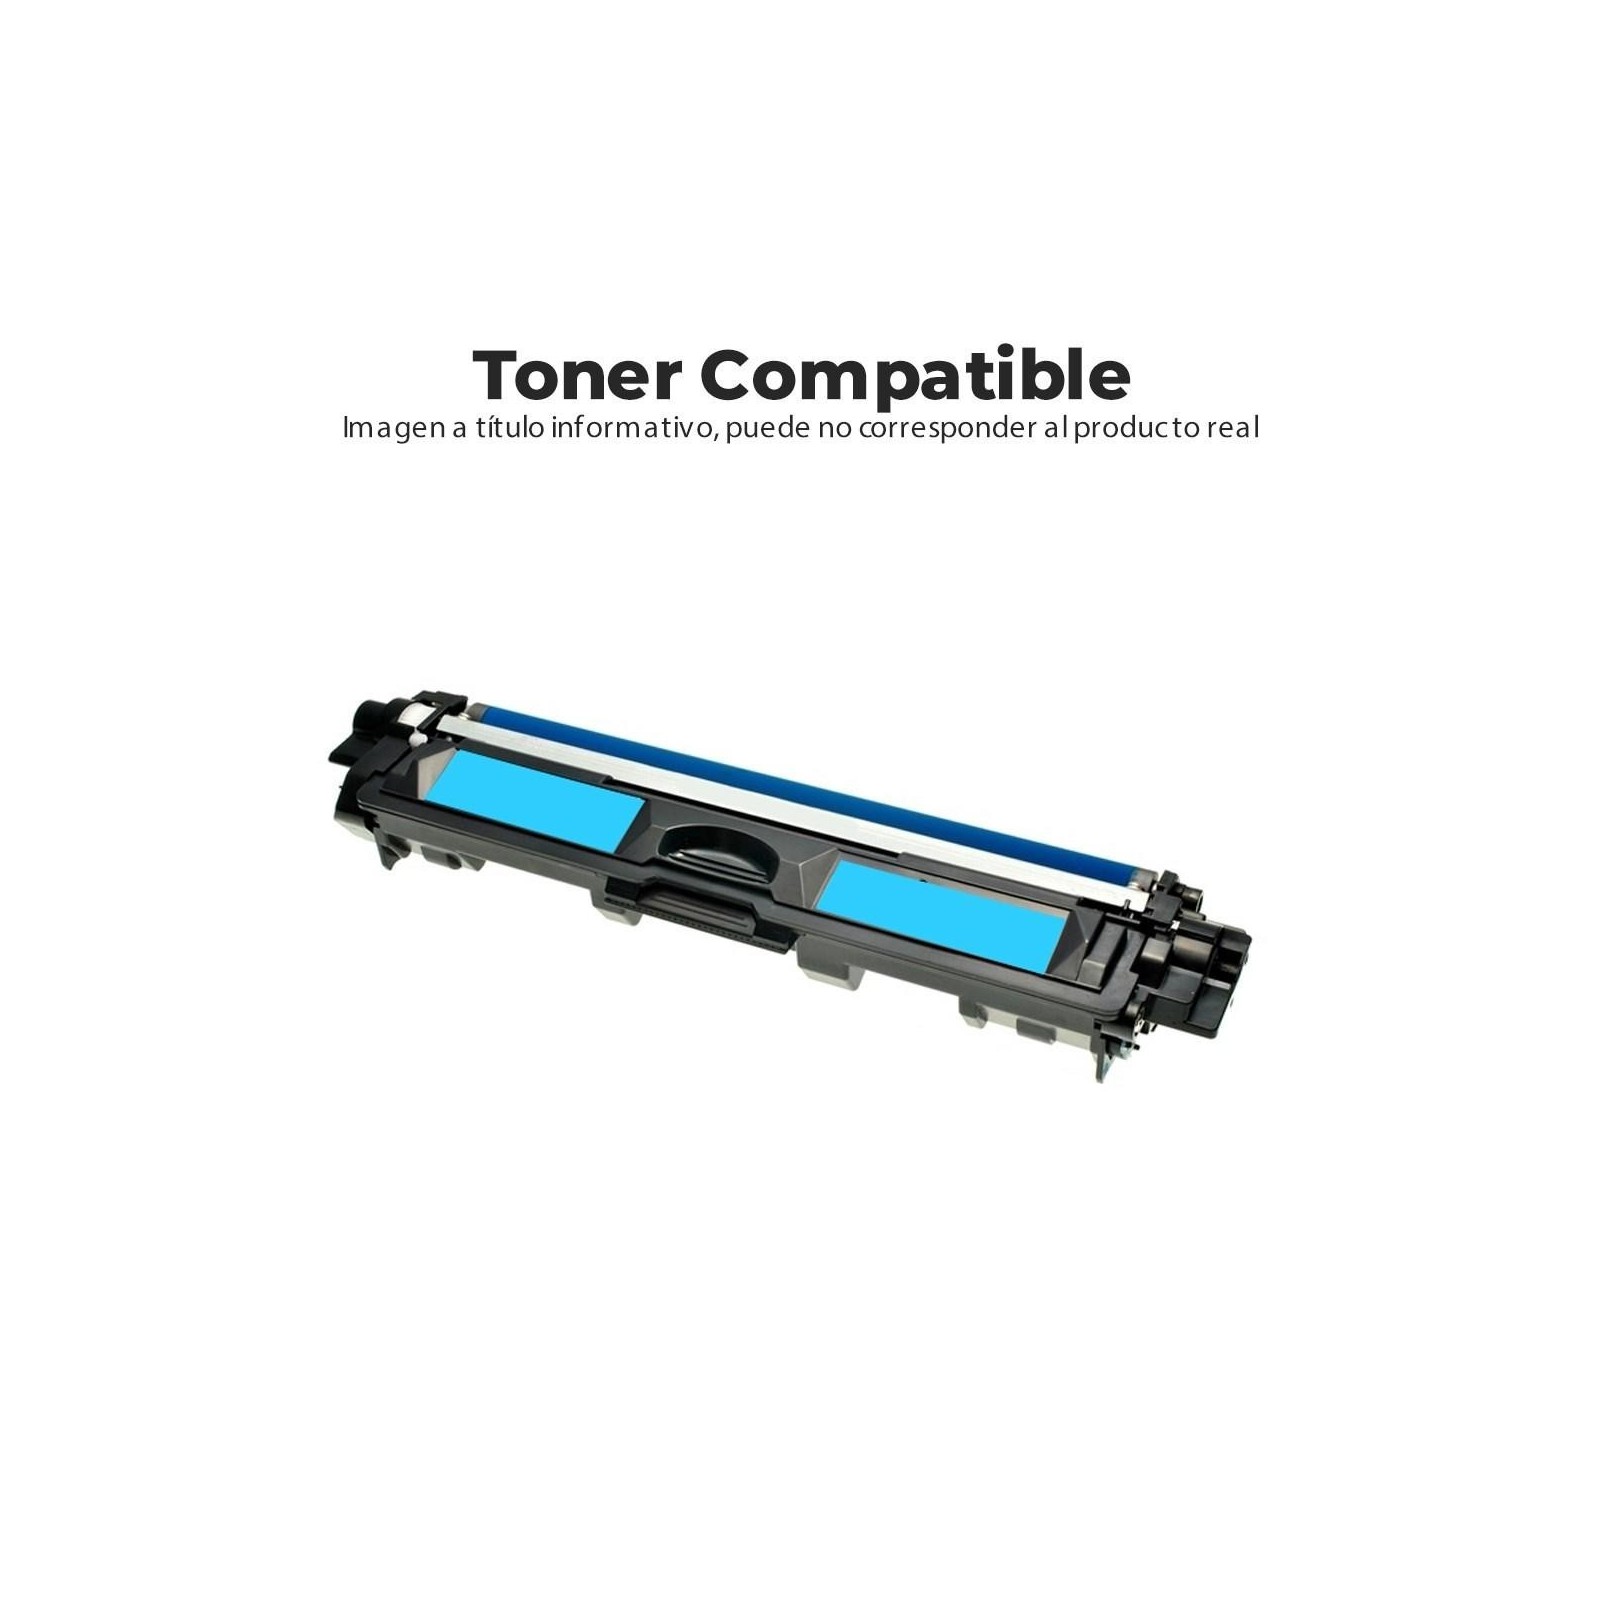 Toner Compatible Cyan Hp Cb541A-Ce321A-Cf211A Cian